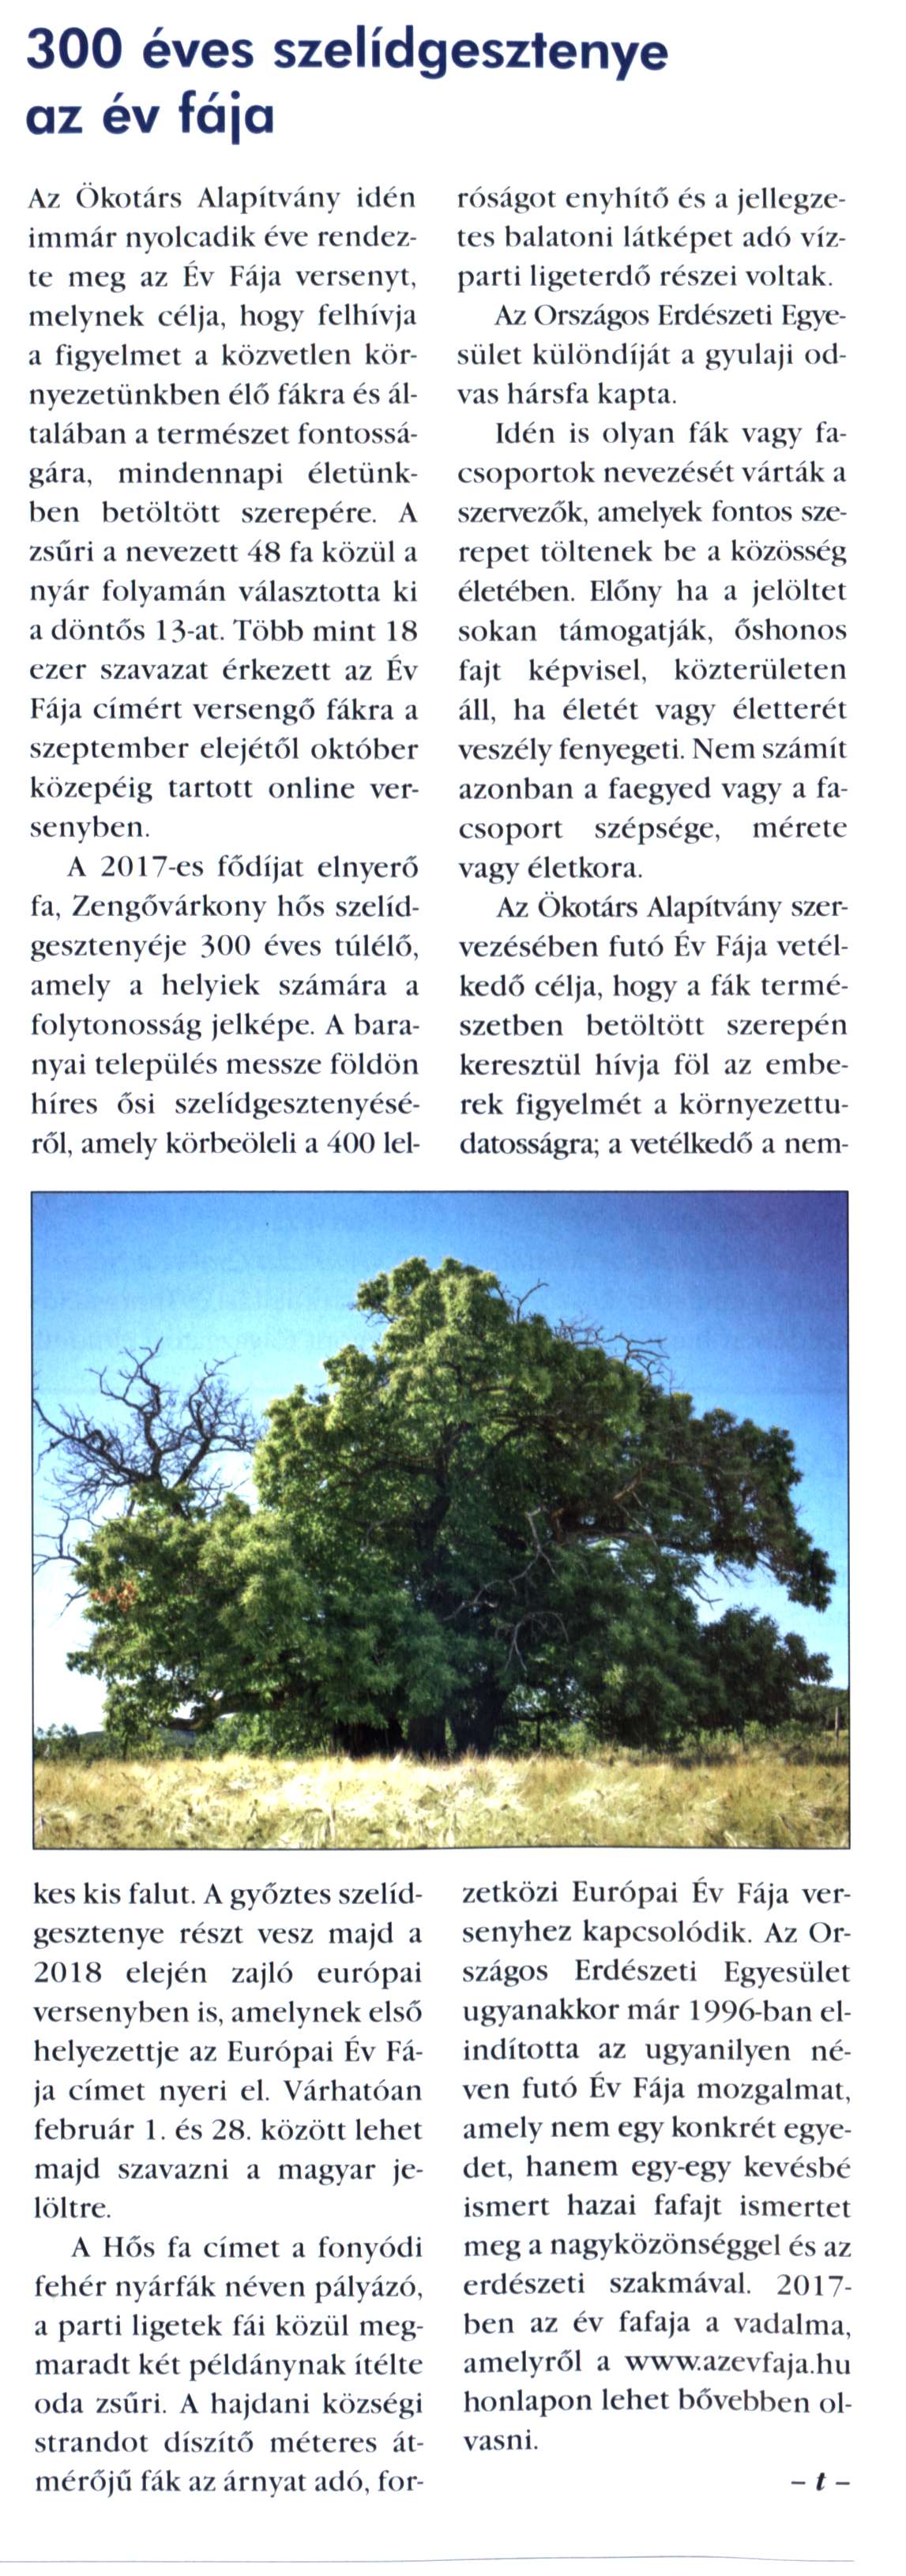 300 éves szelídgesztenye az év fája